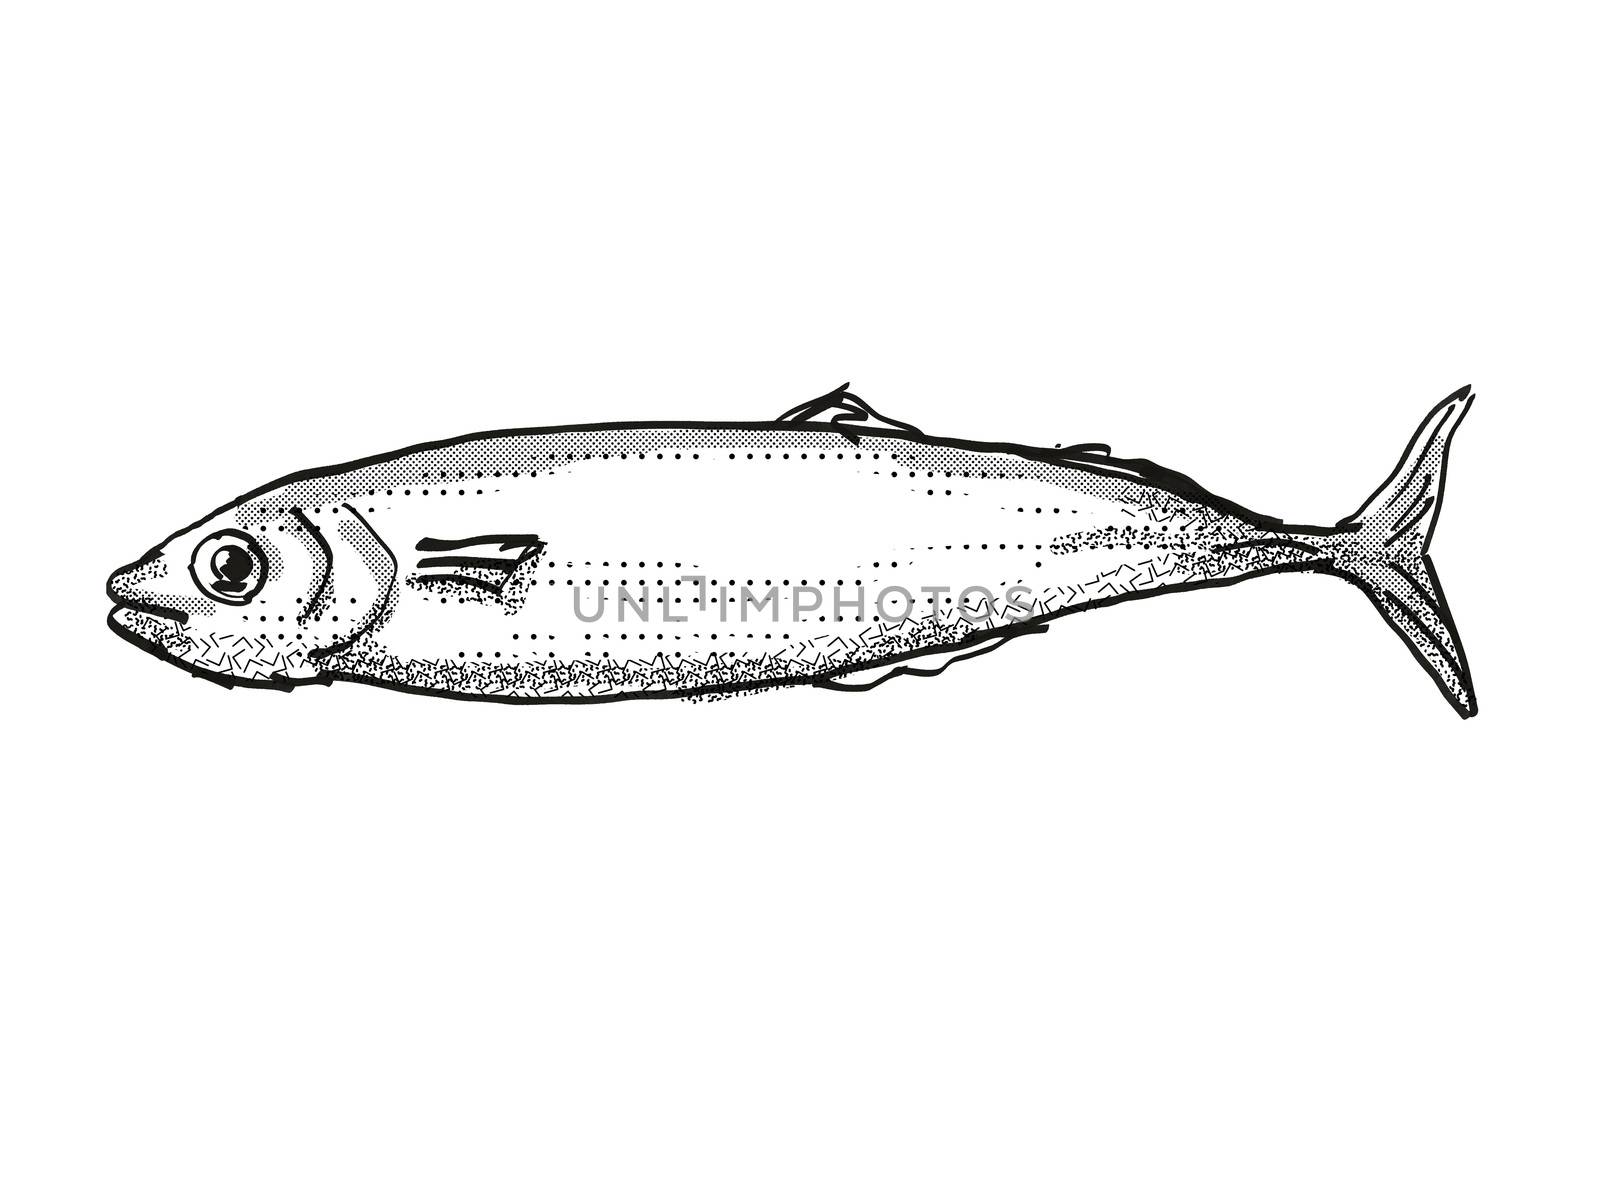 Koheru New Zealand Fish Cartoon Retro Drawing by patrimonio